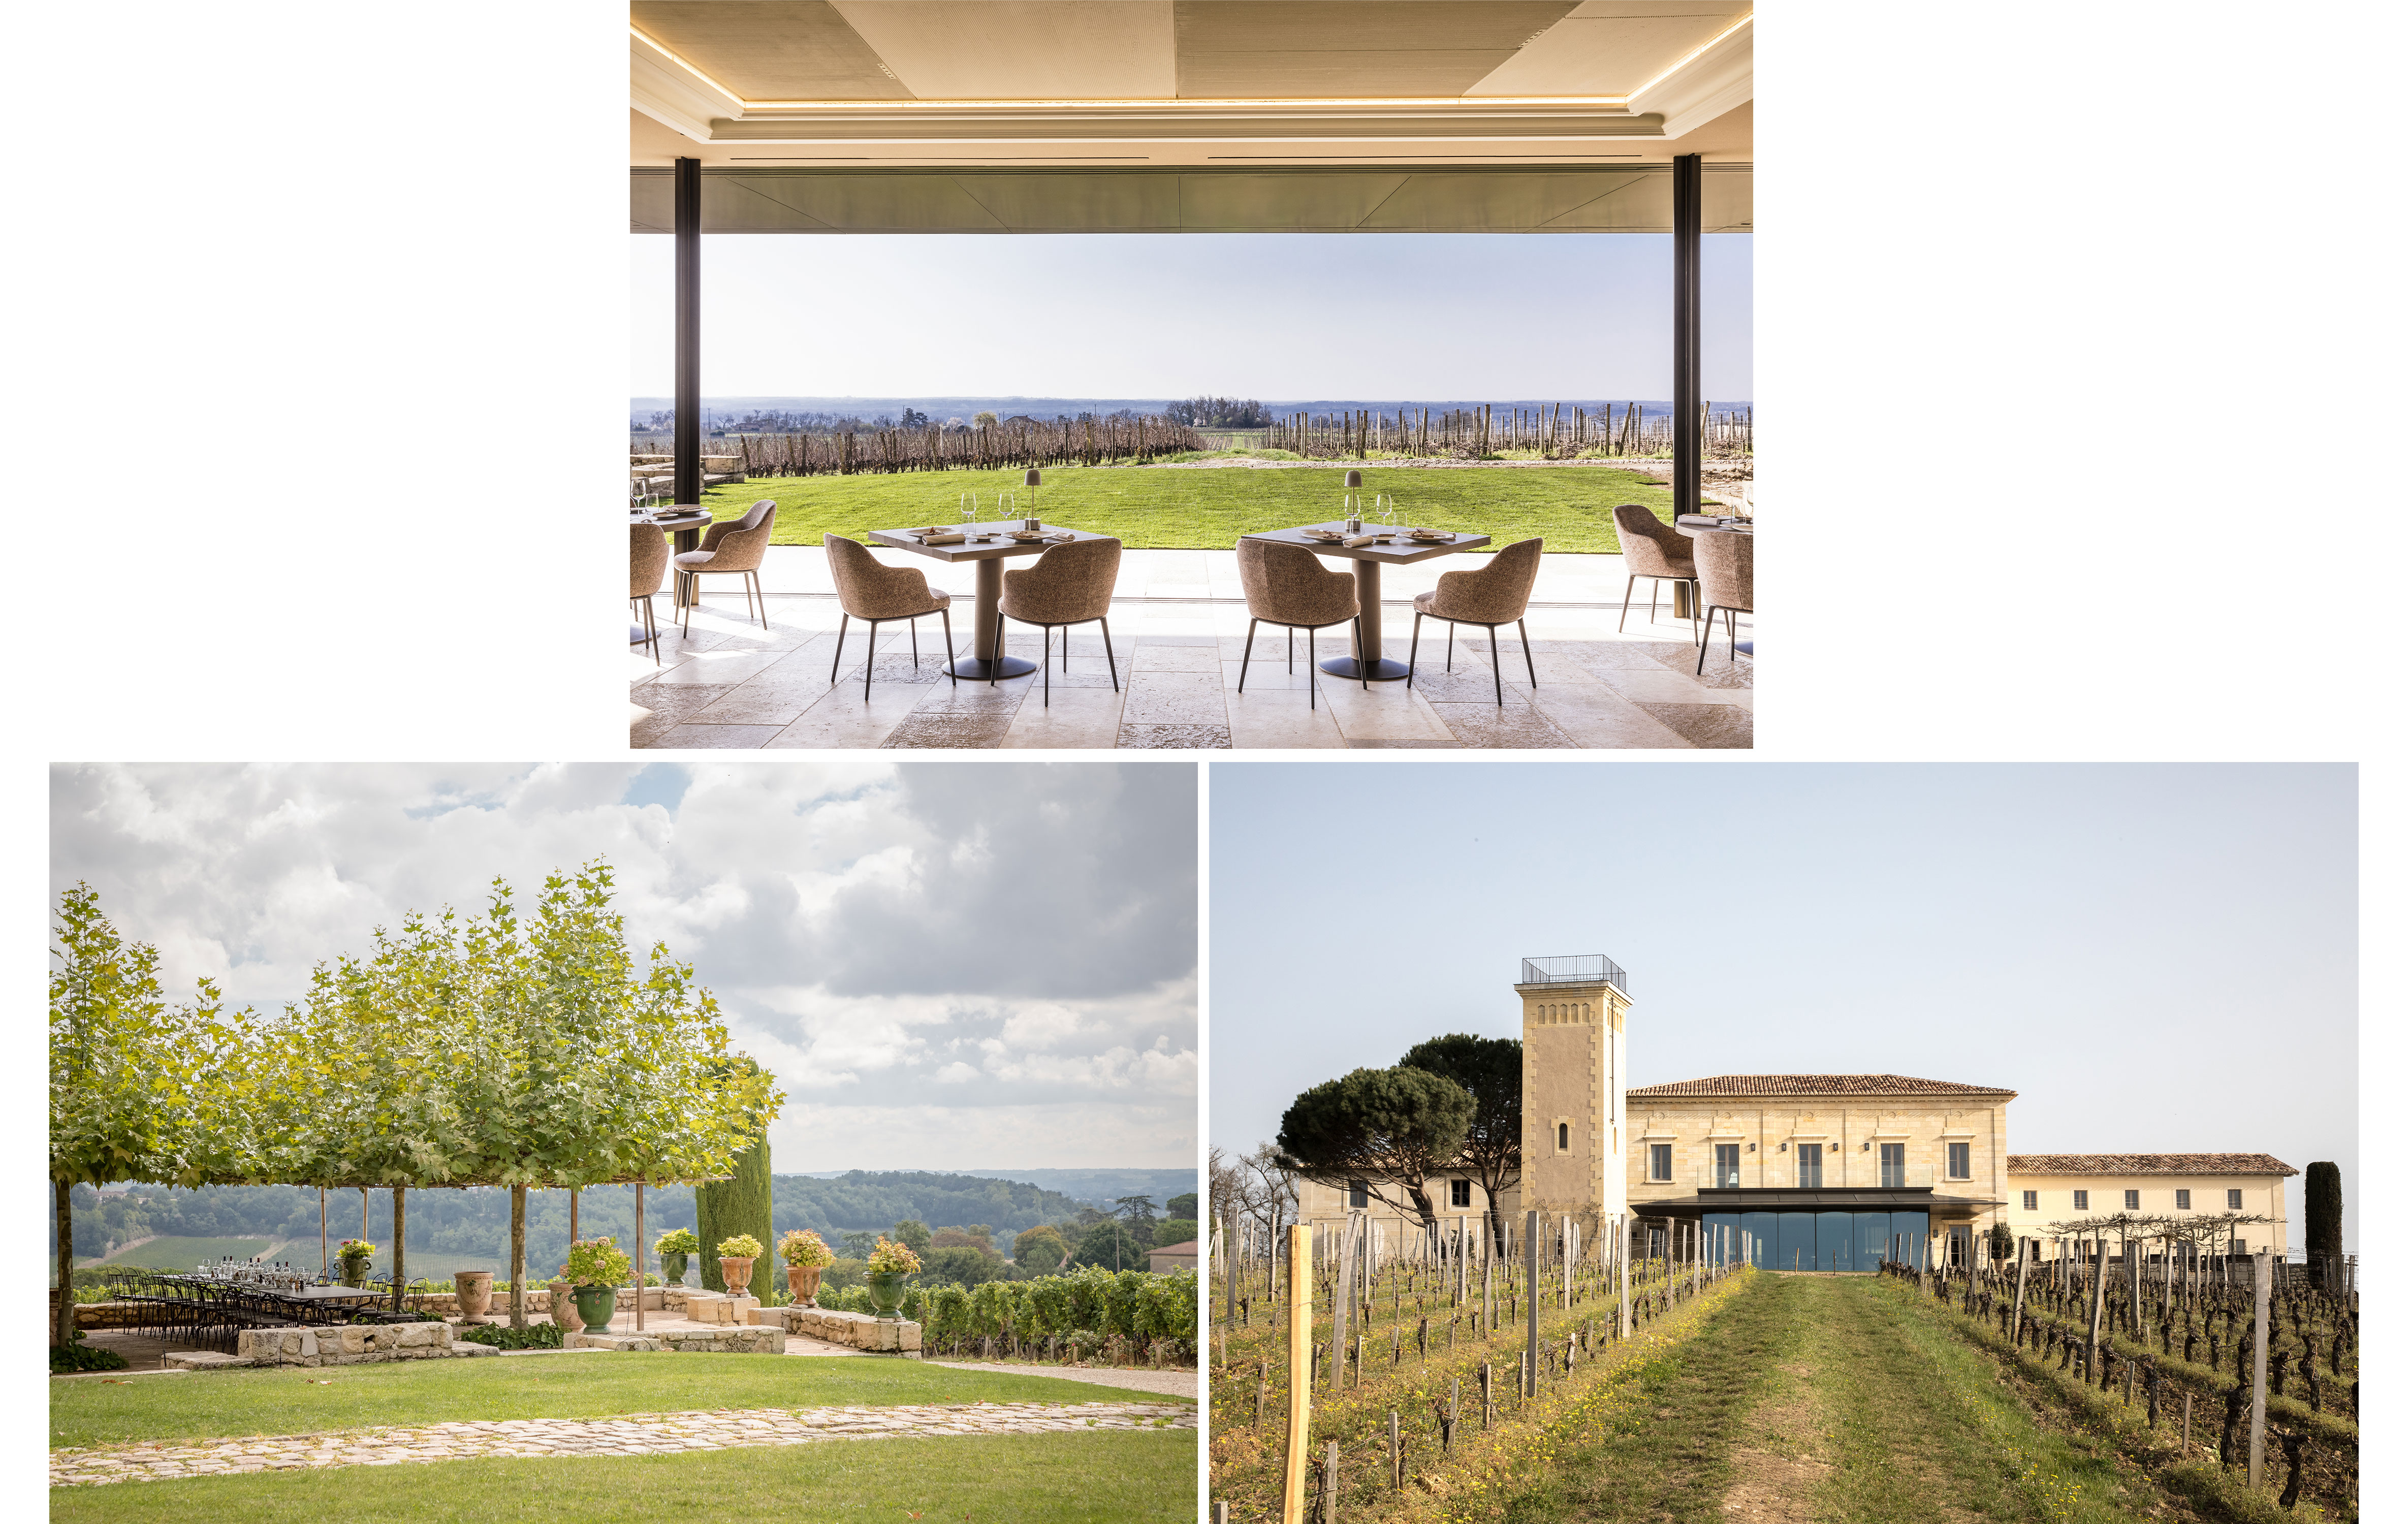 Les terrasses de Troplong Mondot, vue sur les vignes - Crédit photos : Romain Ricard, Troplong Mondot & Cécile Perrinet Lhermitte